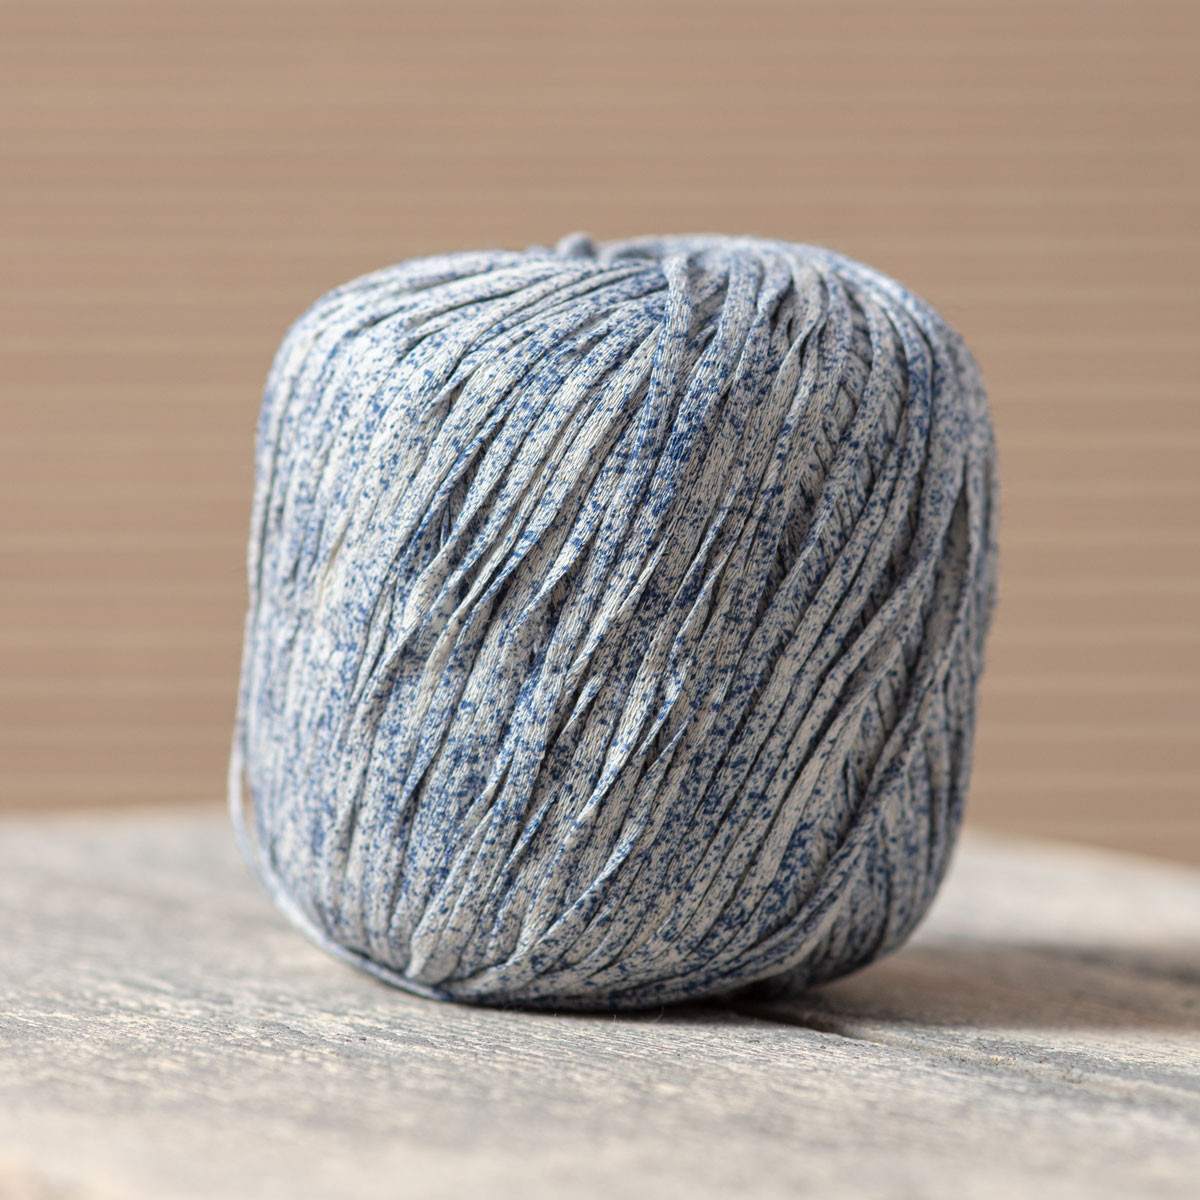 Pyrox cotton knitting ball